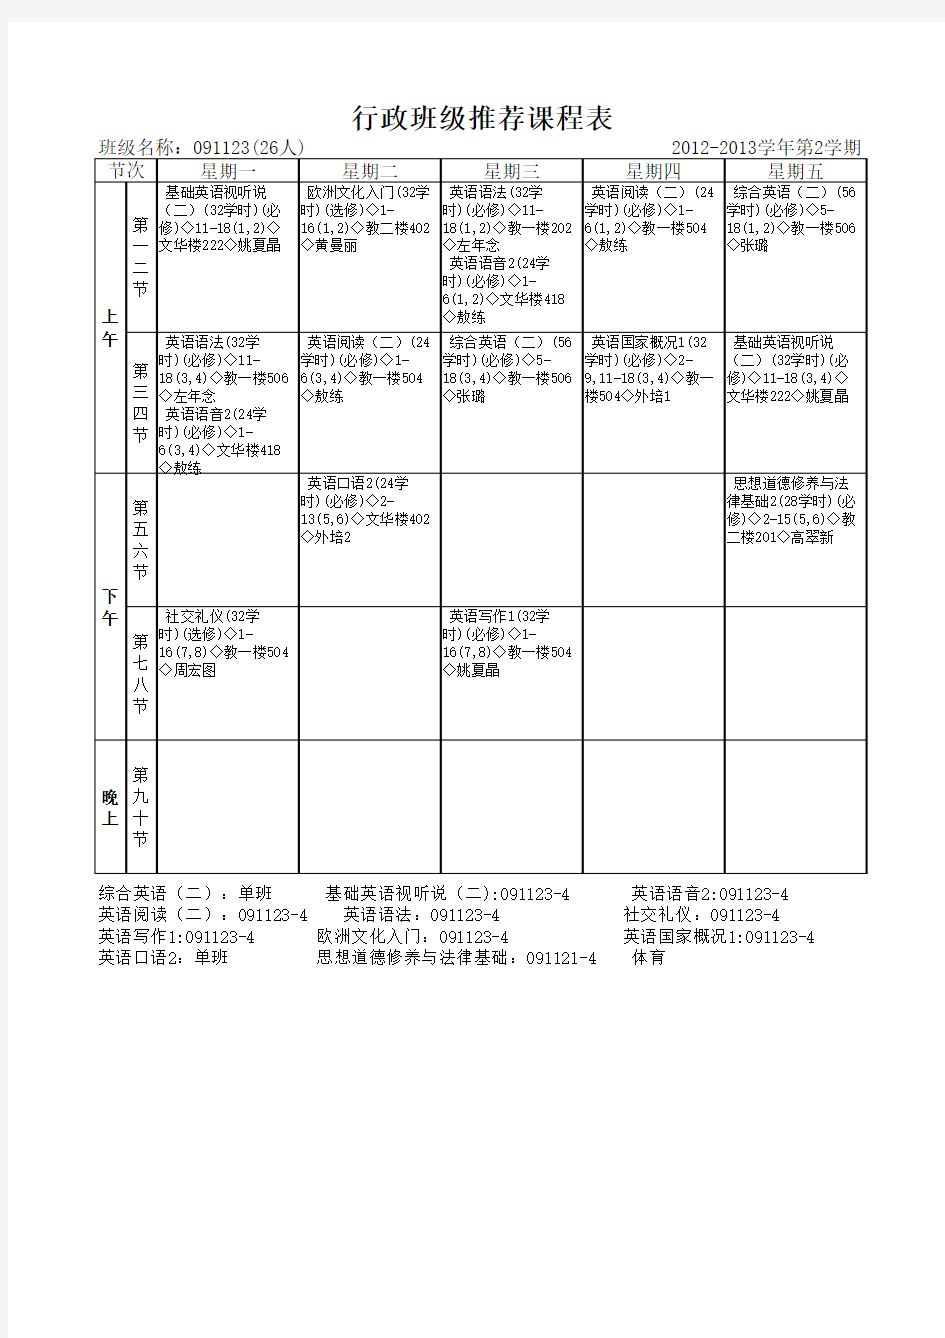 中国地质大学 外国语学院2012级行政班推荐课表